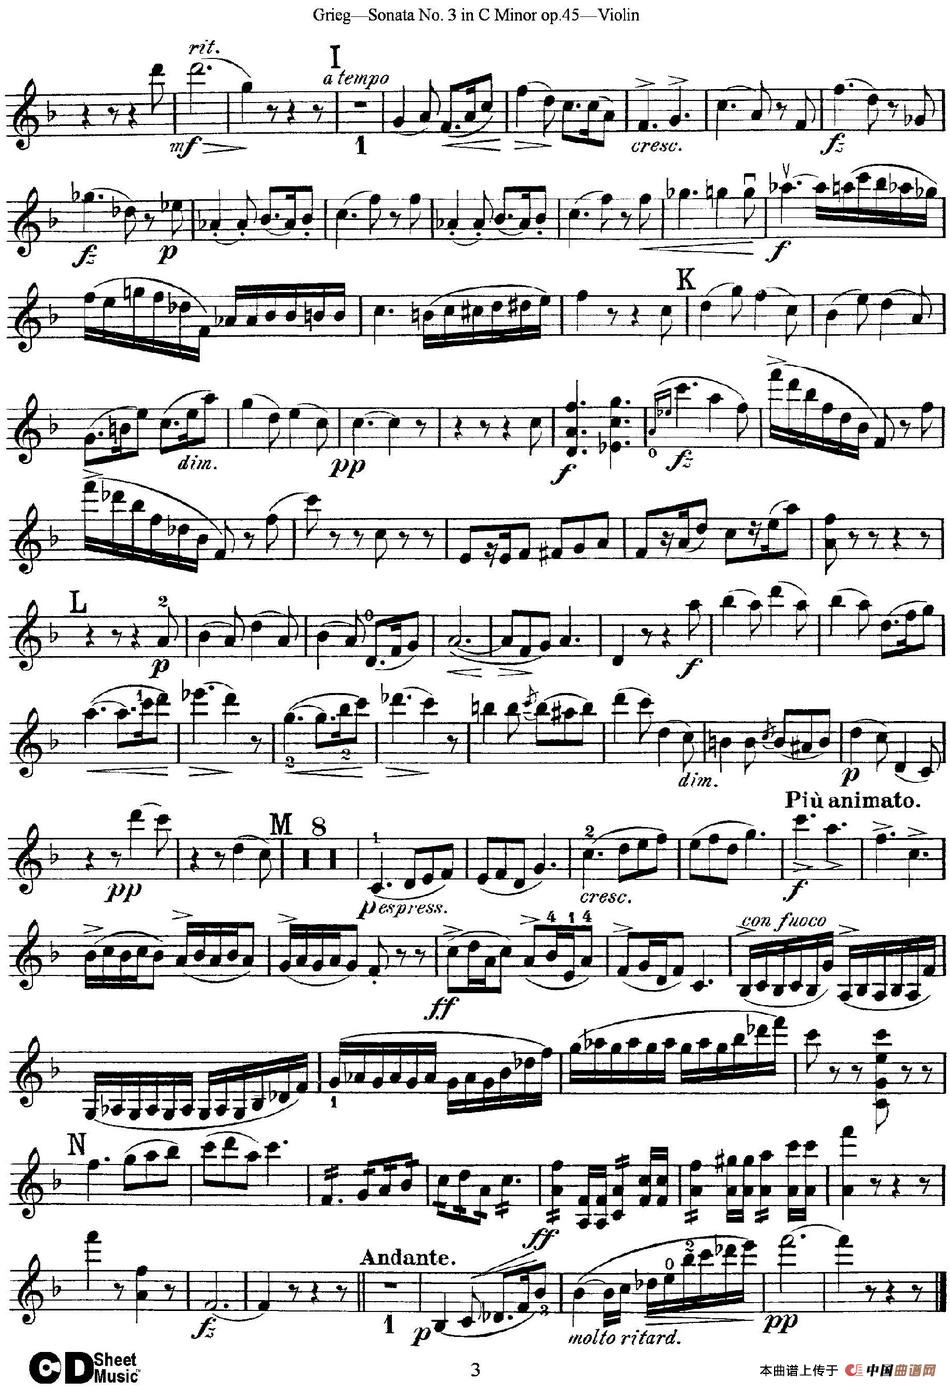 Violin Sonata No.1 Op.3